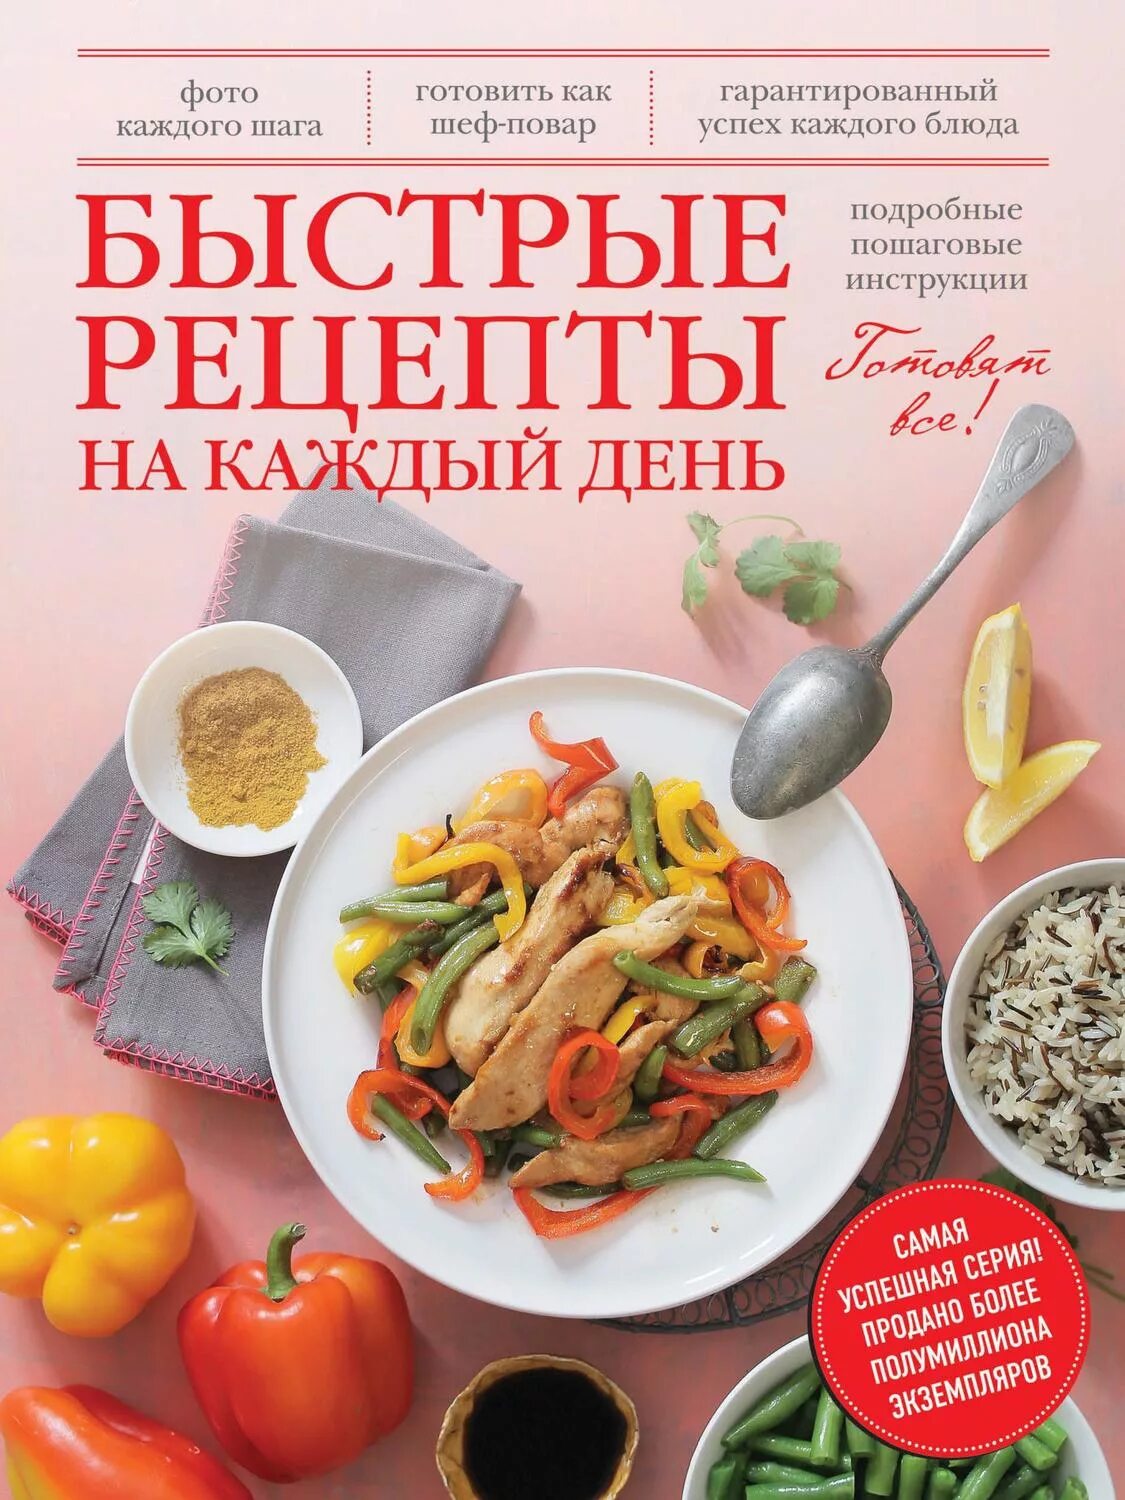 Книги про рецепты. Рецепты на каждый день. Рецепты наикаждый день. Кулинария рецепты на каждый день. Книга рецептов на каждый день.